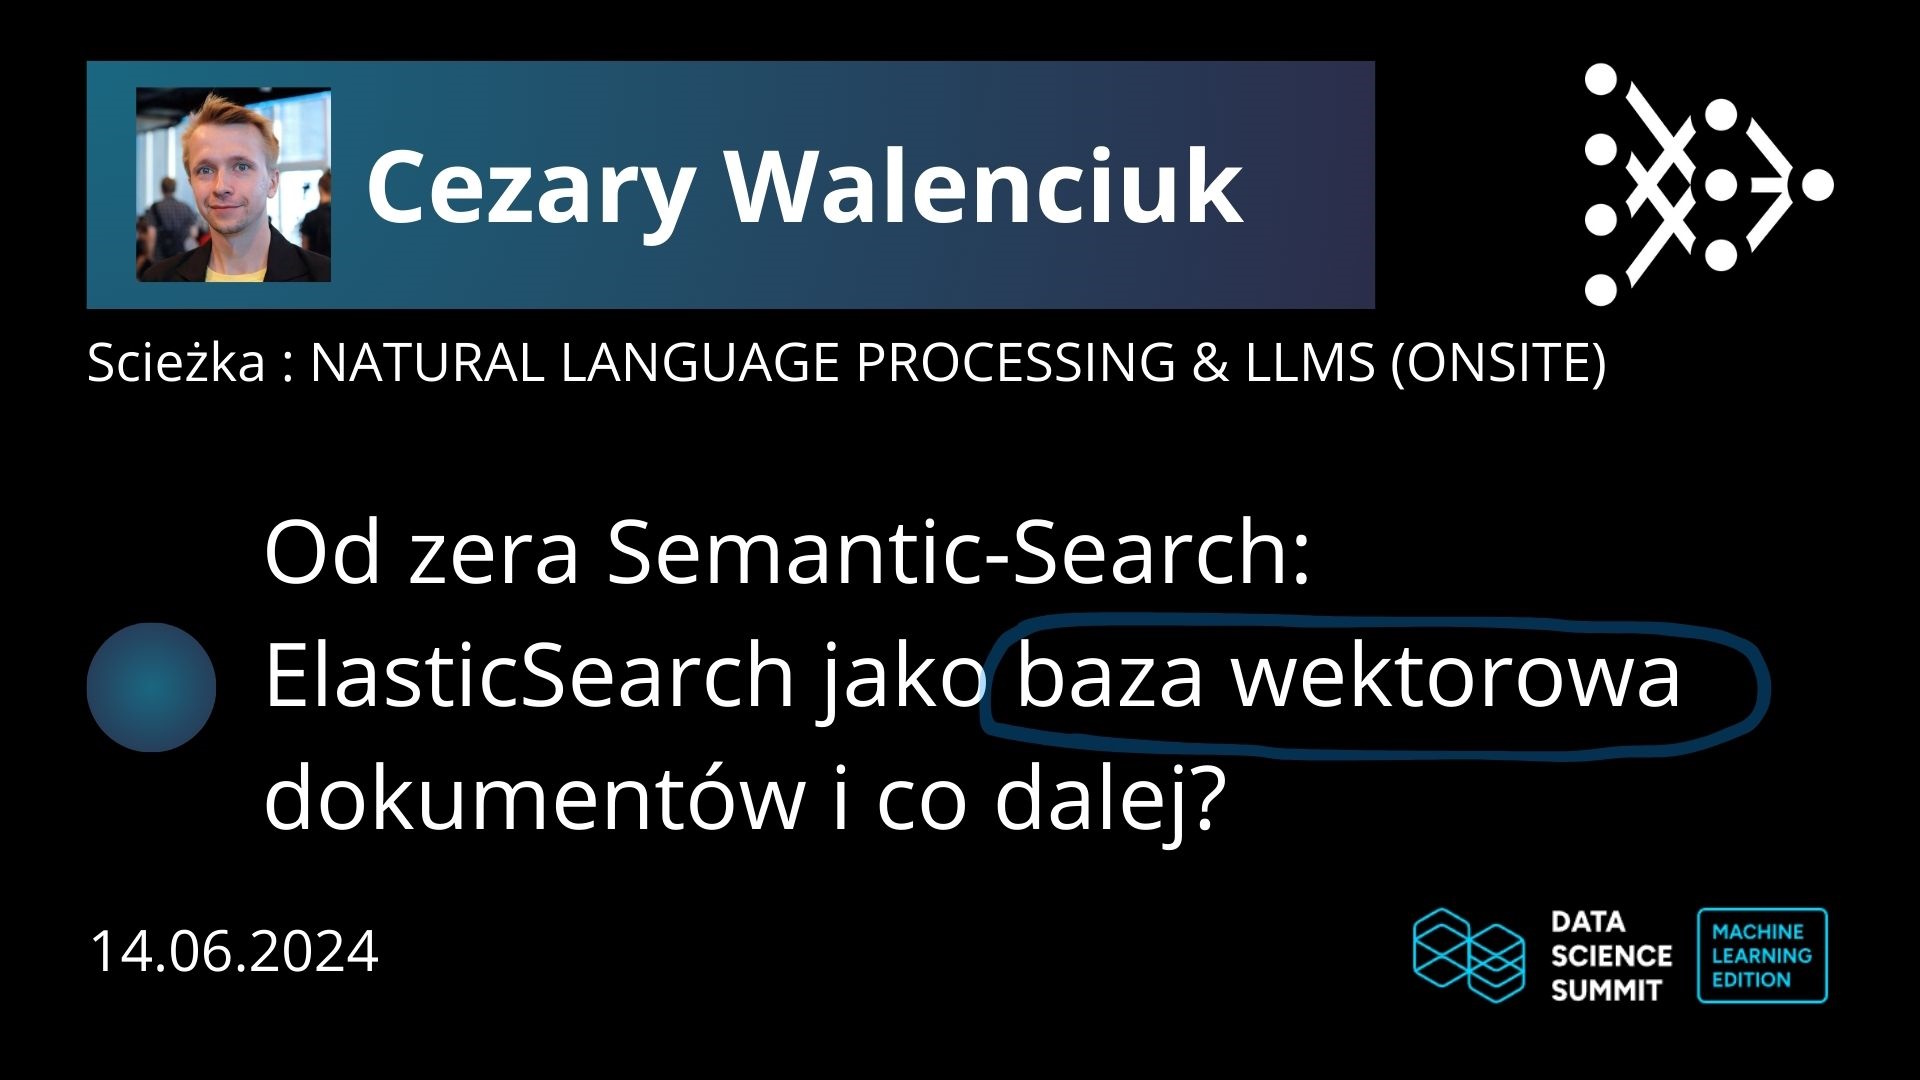 Od zera Semantic-Search: ElasticSearch jako baza wektorowa dokumentów i co dalej? obrazek reklamujący wydarzenie